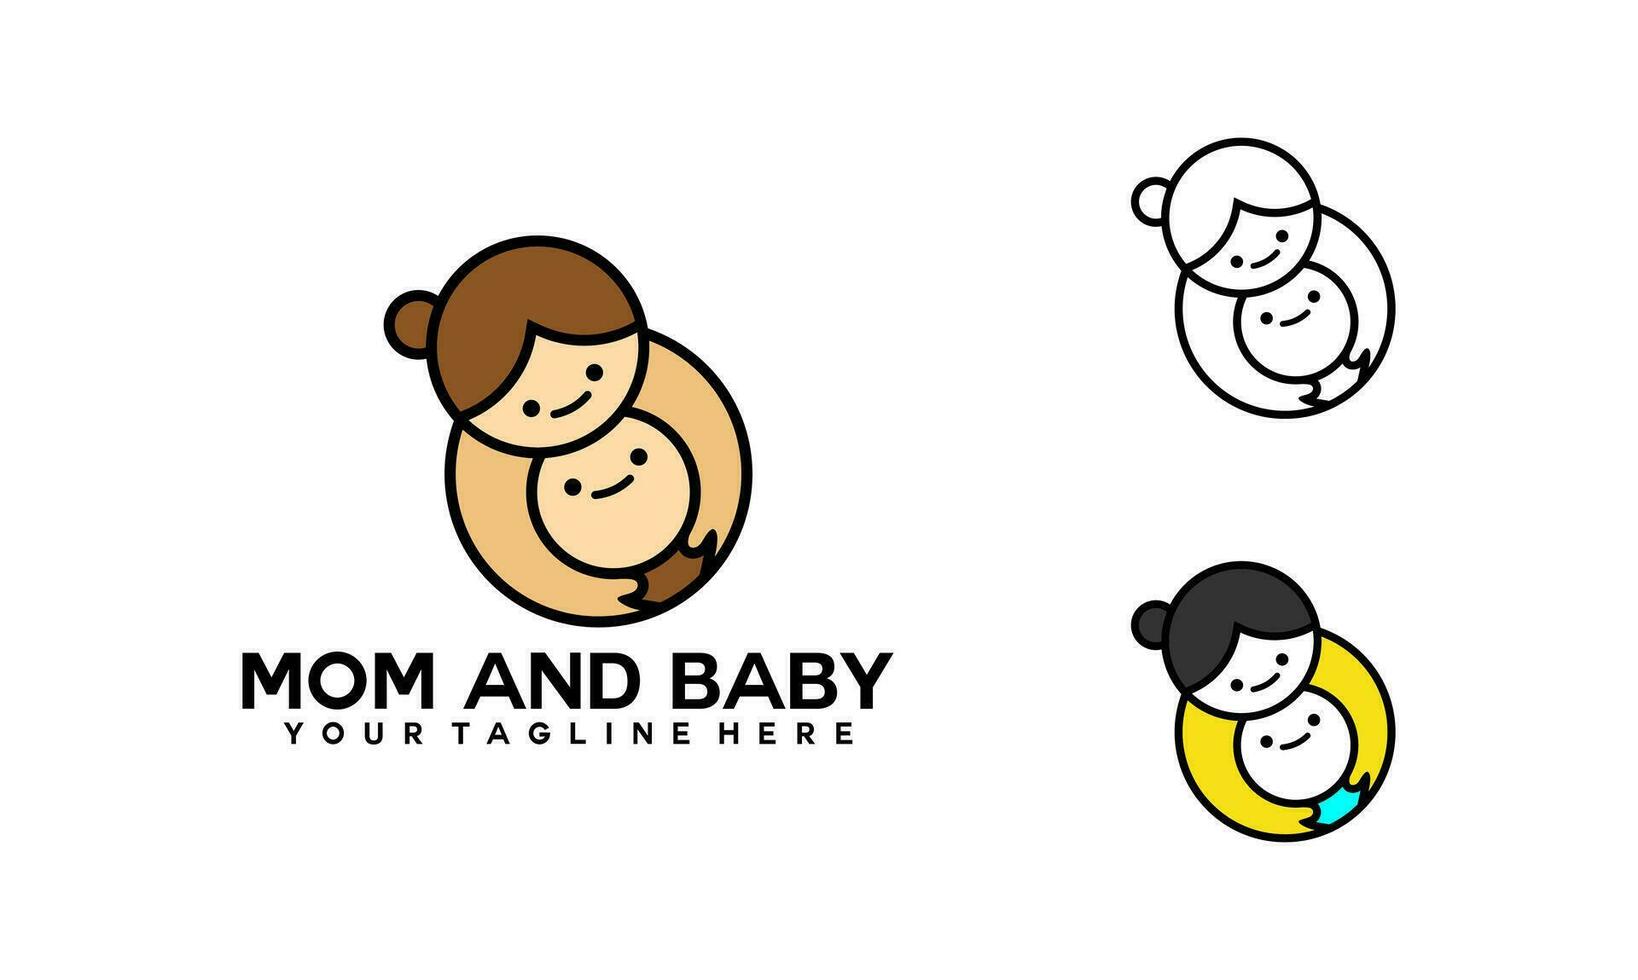 maman et bébé logo conceptionmaman et bébé logo conception. mère et bébé dans Facile style illustration. vecteur